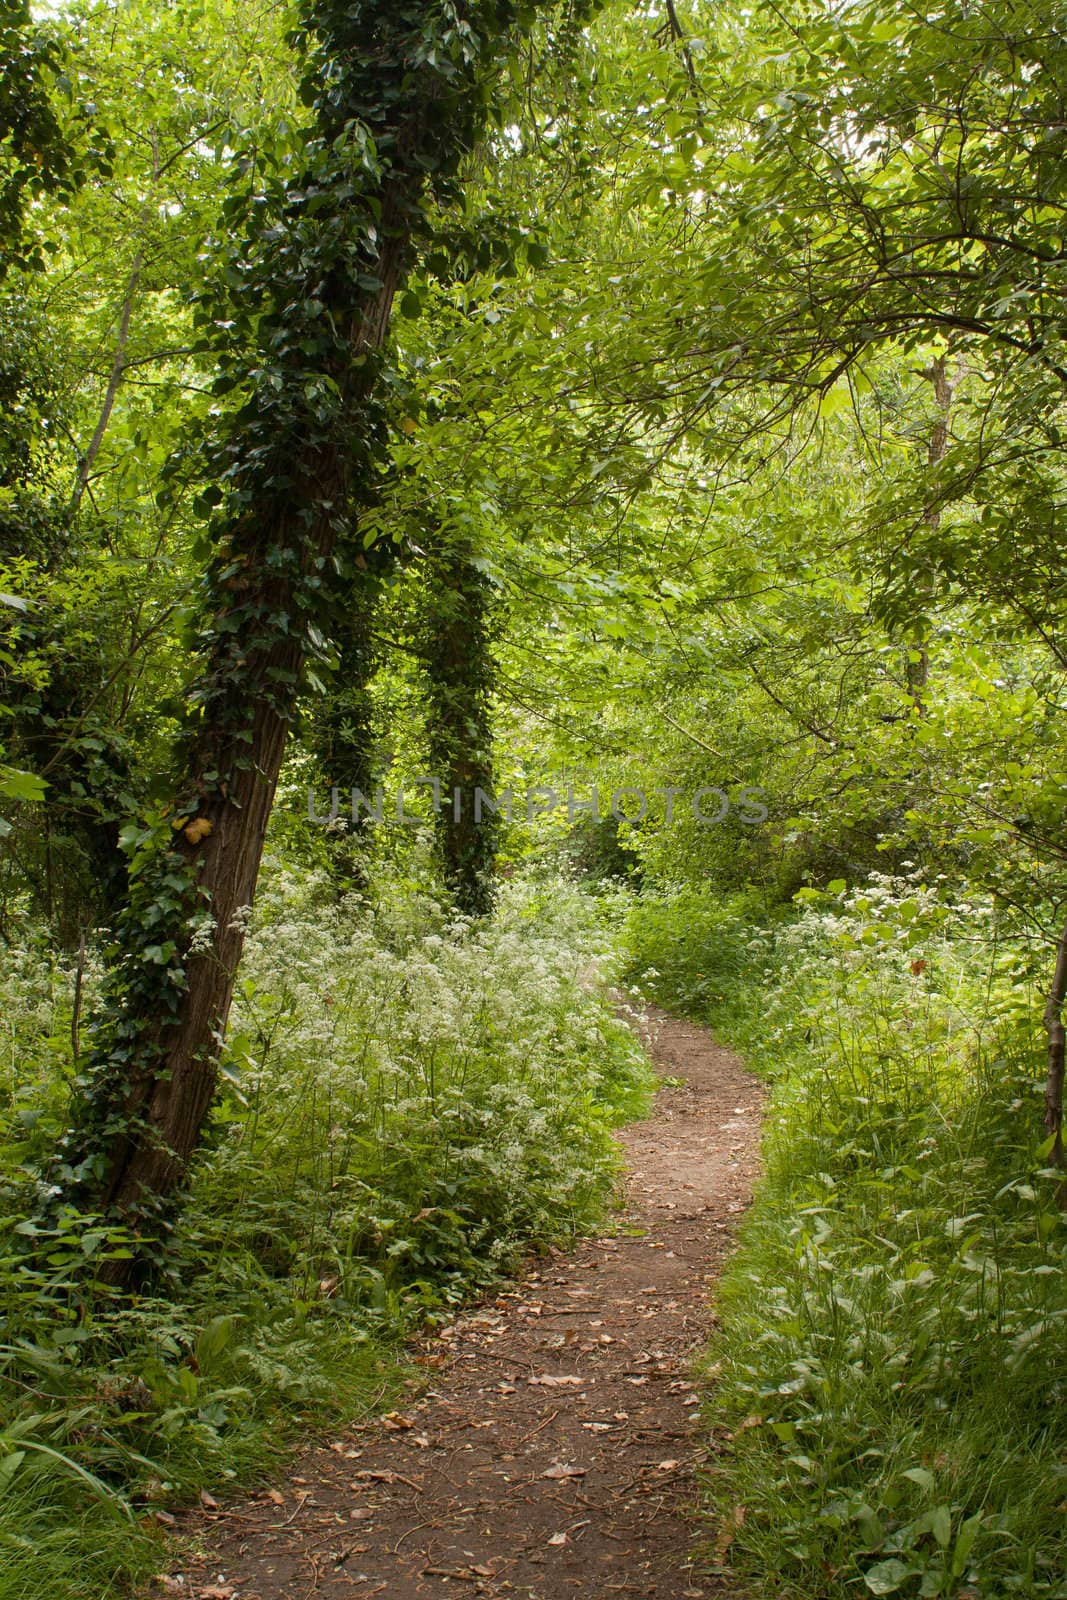 Footpath between trees in summer